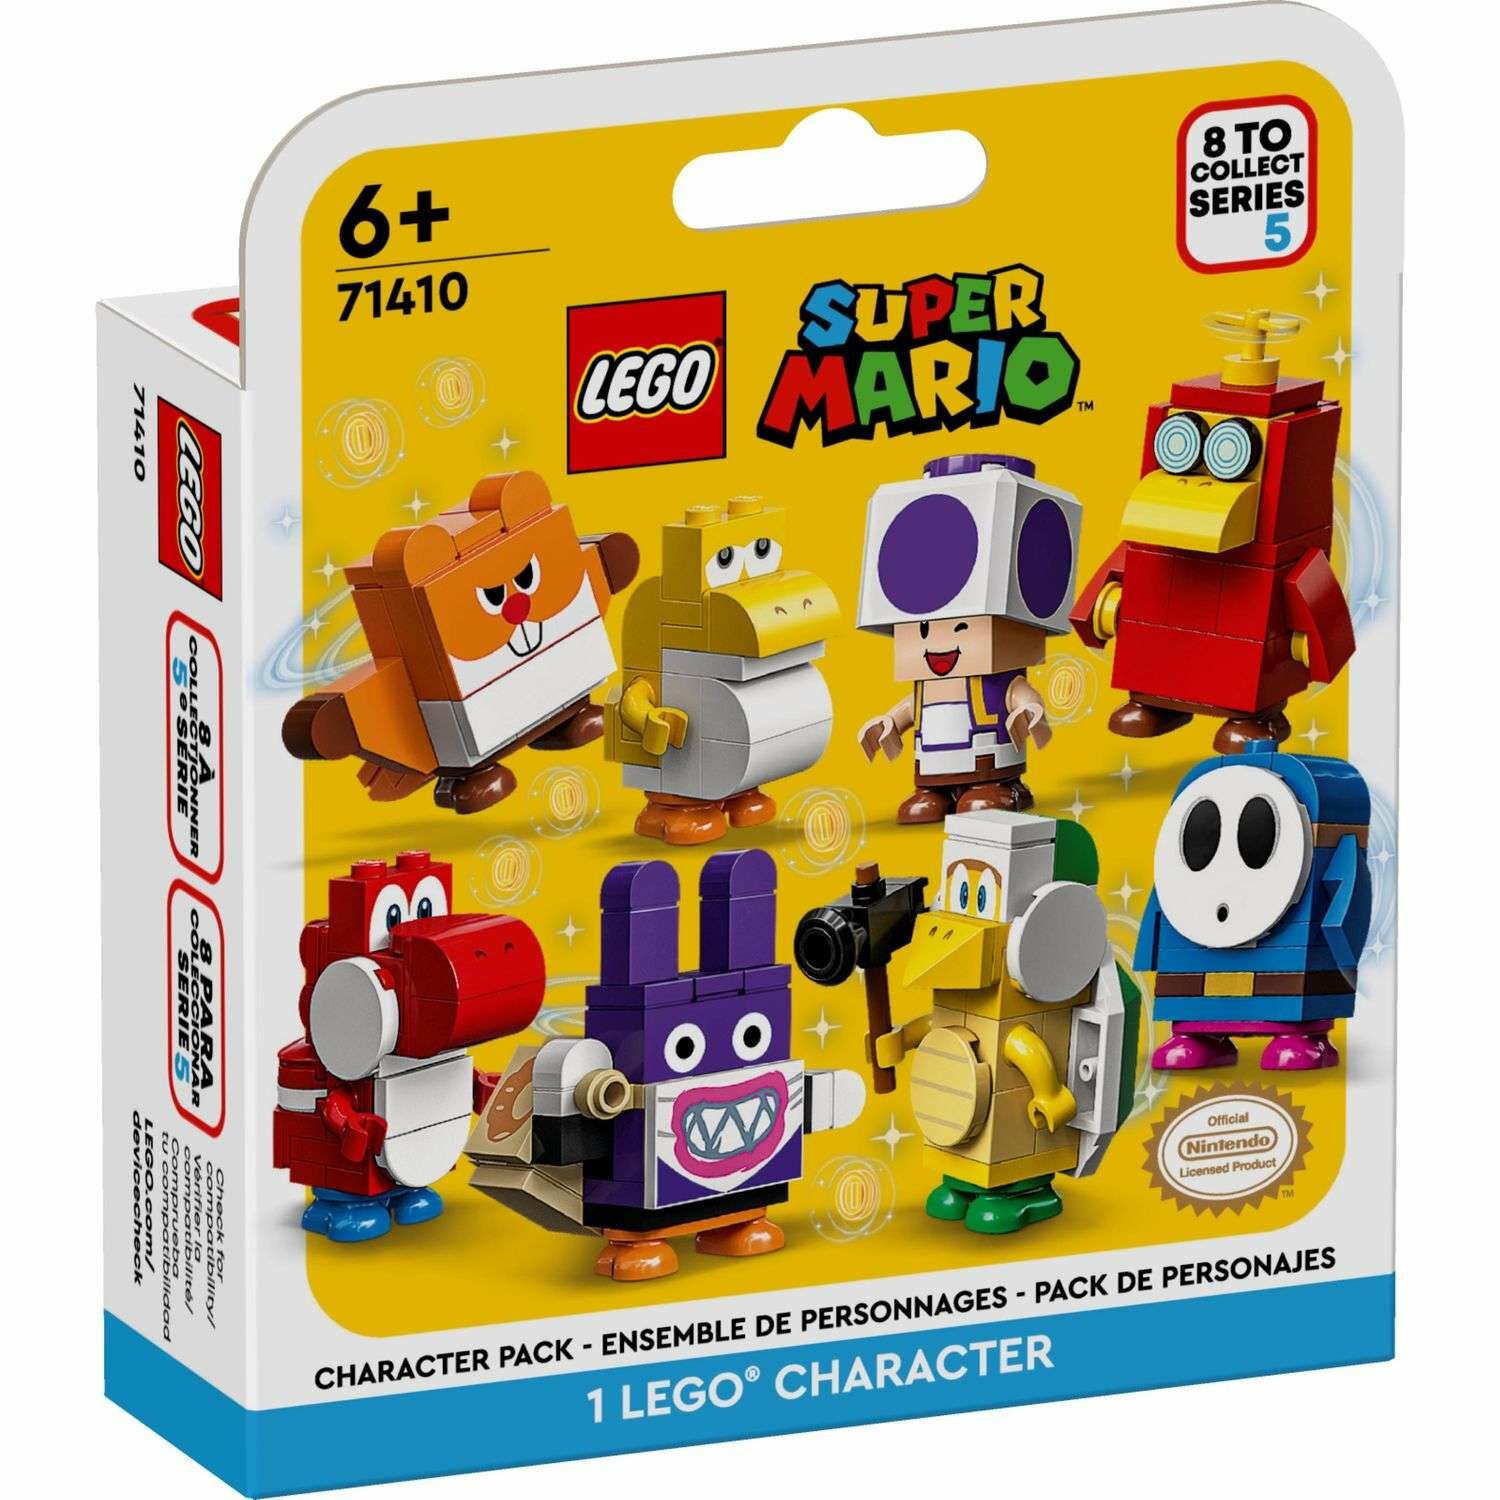 Конструктор LEGO Super Mario, Series 5, Character 71410 (одна случайная минифигурка)